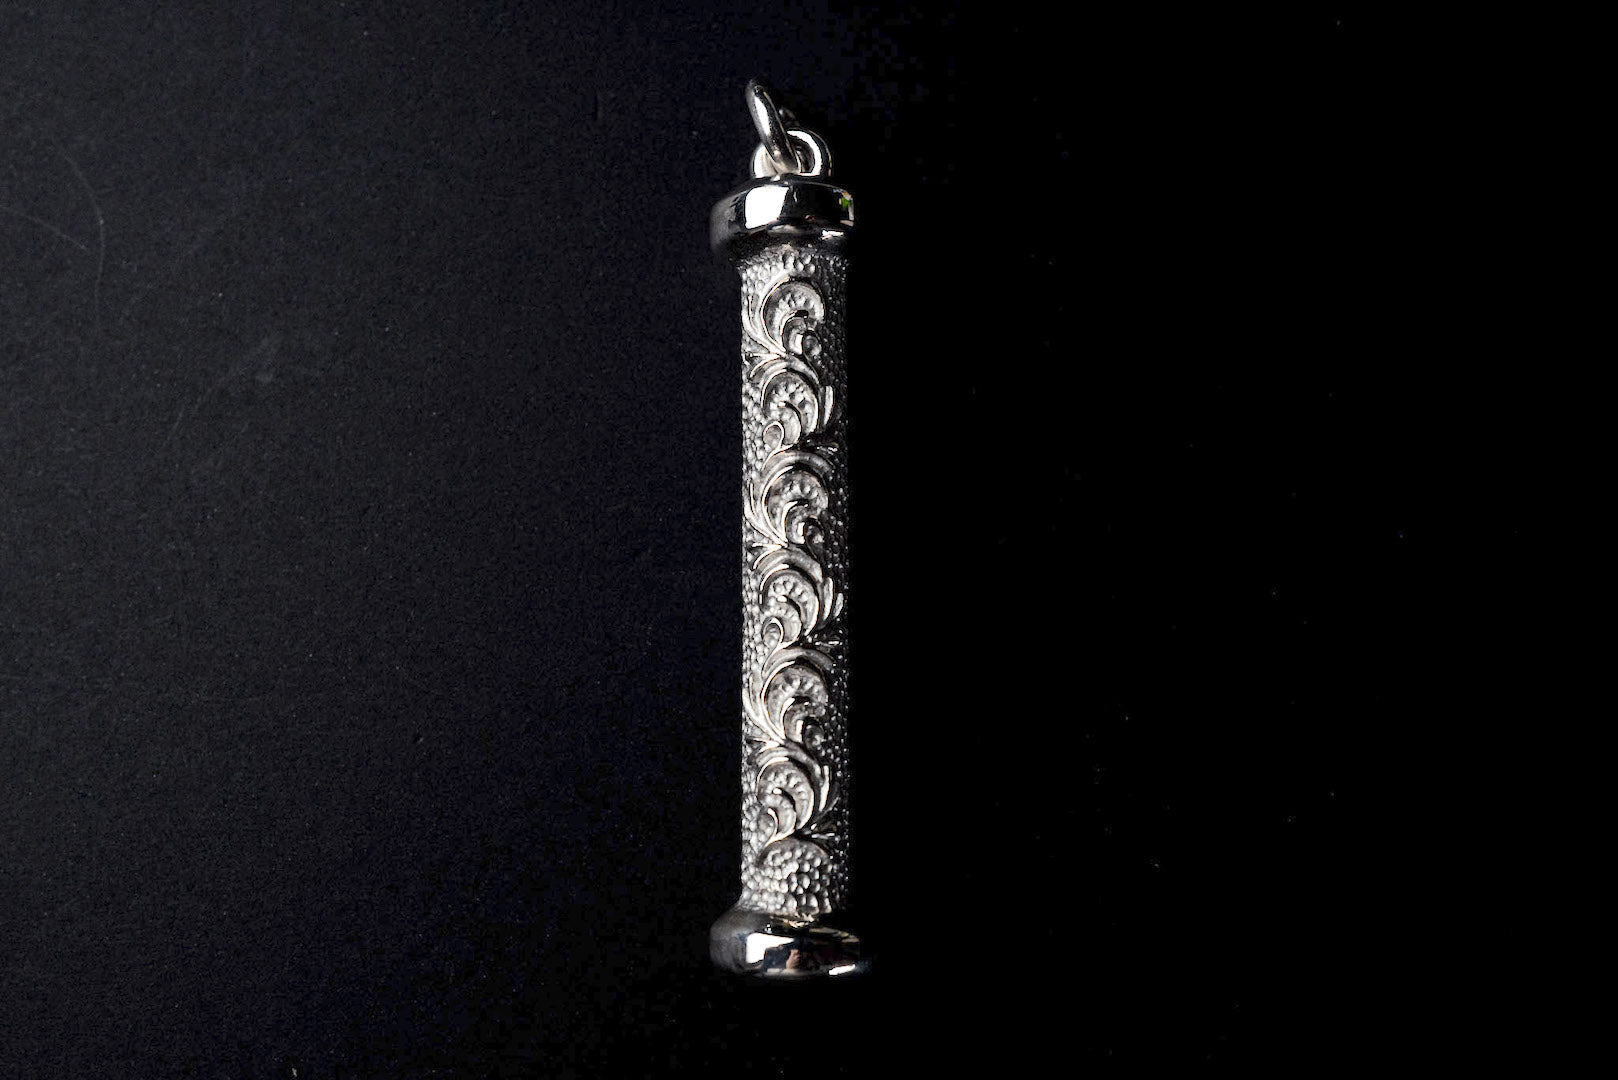 Legend Size Large "Totem Pole" Pendant (P-69-L)